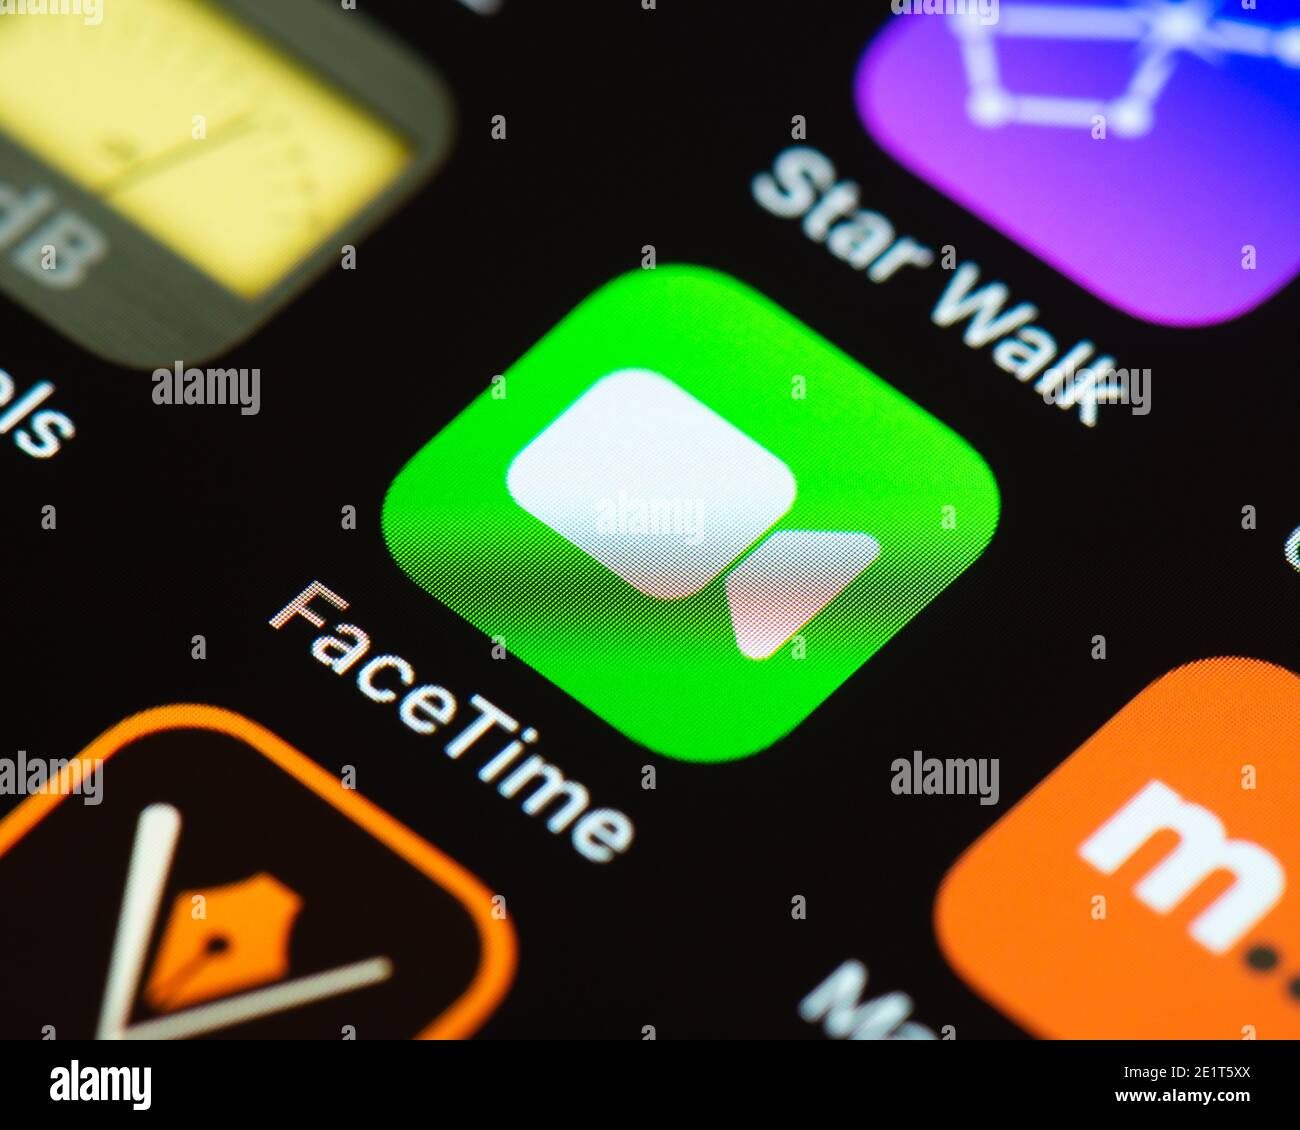 FaceTime App-Symbol auf dem Apple iPhone-Bildschirm. FaceTime ist ein von Apple entwickeltes Videotelefony-Produkt. Stockfoto